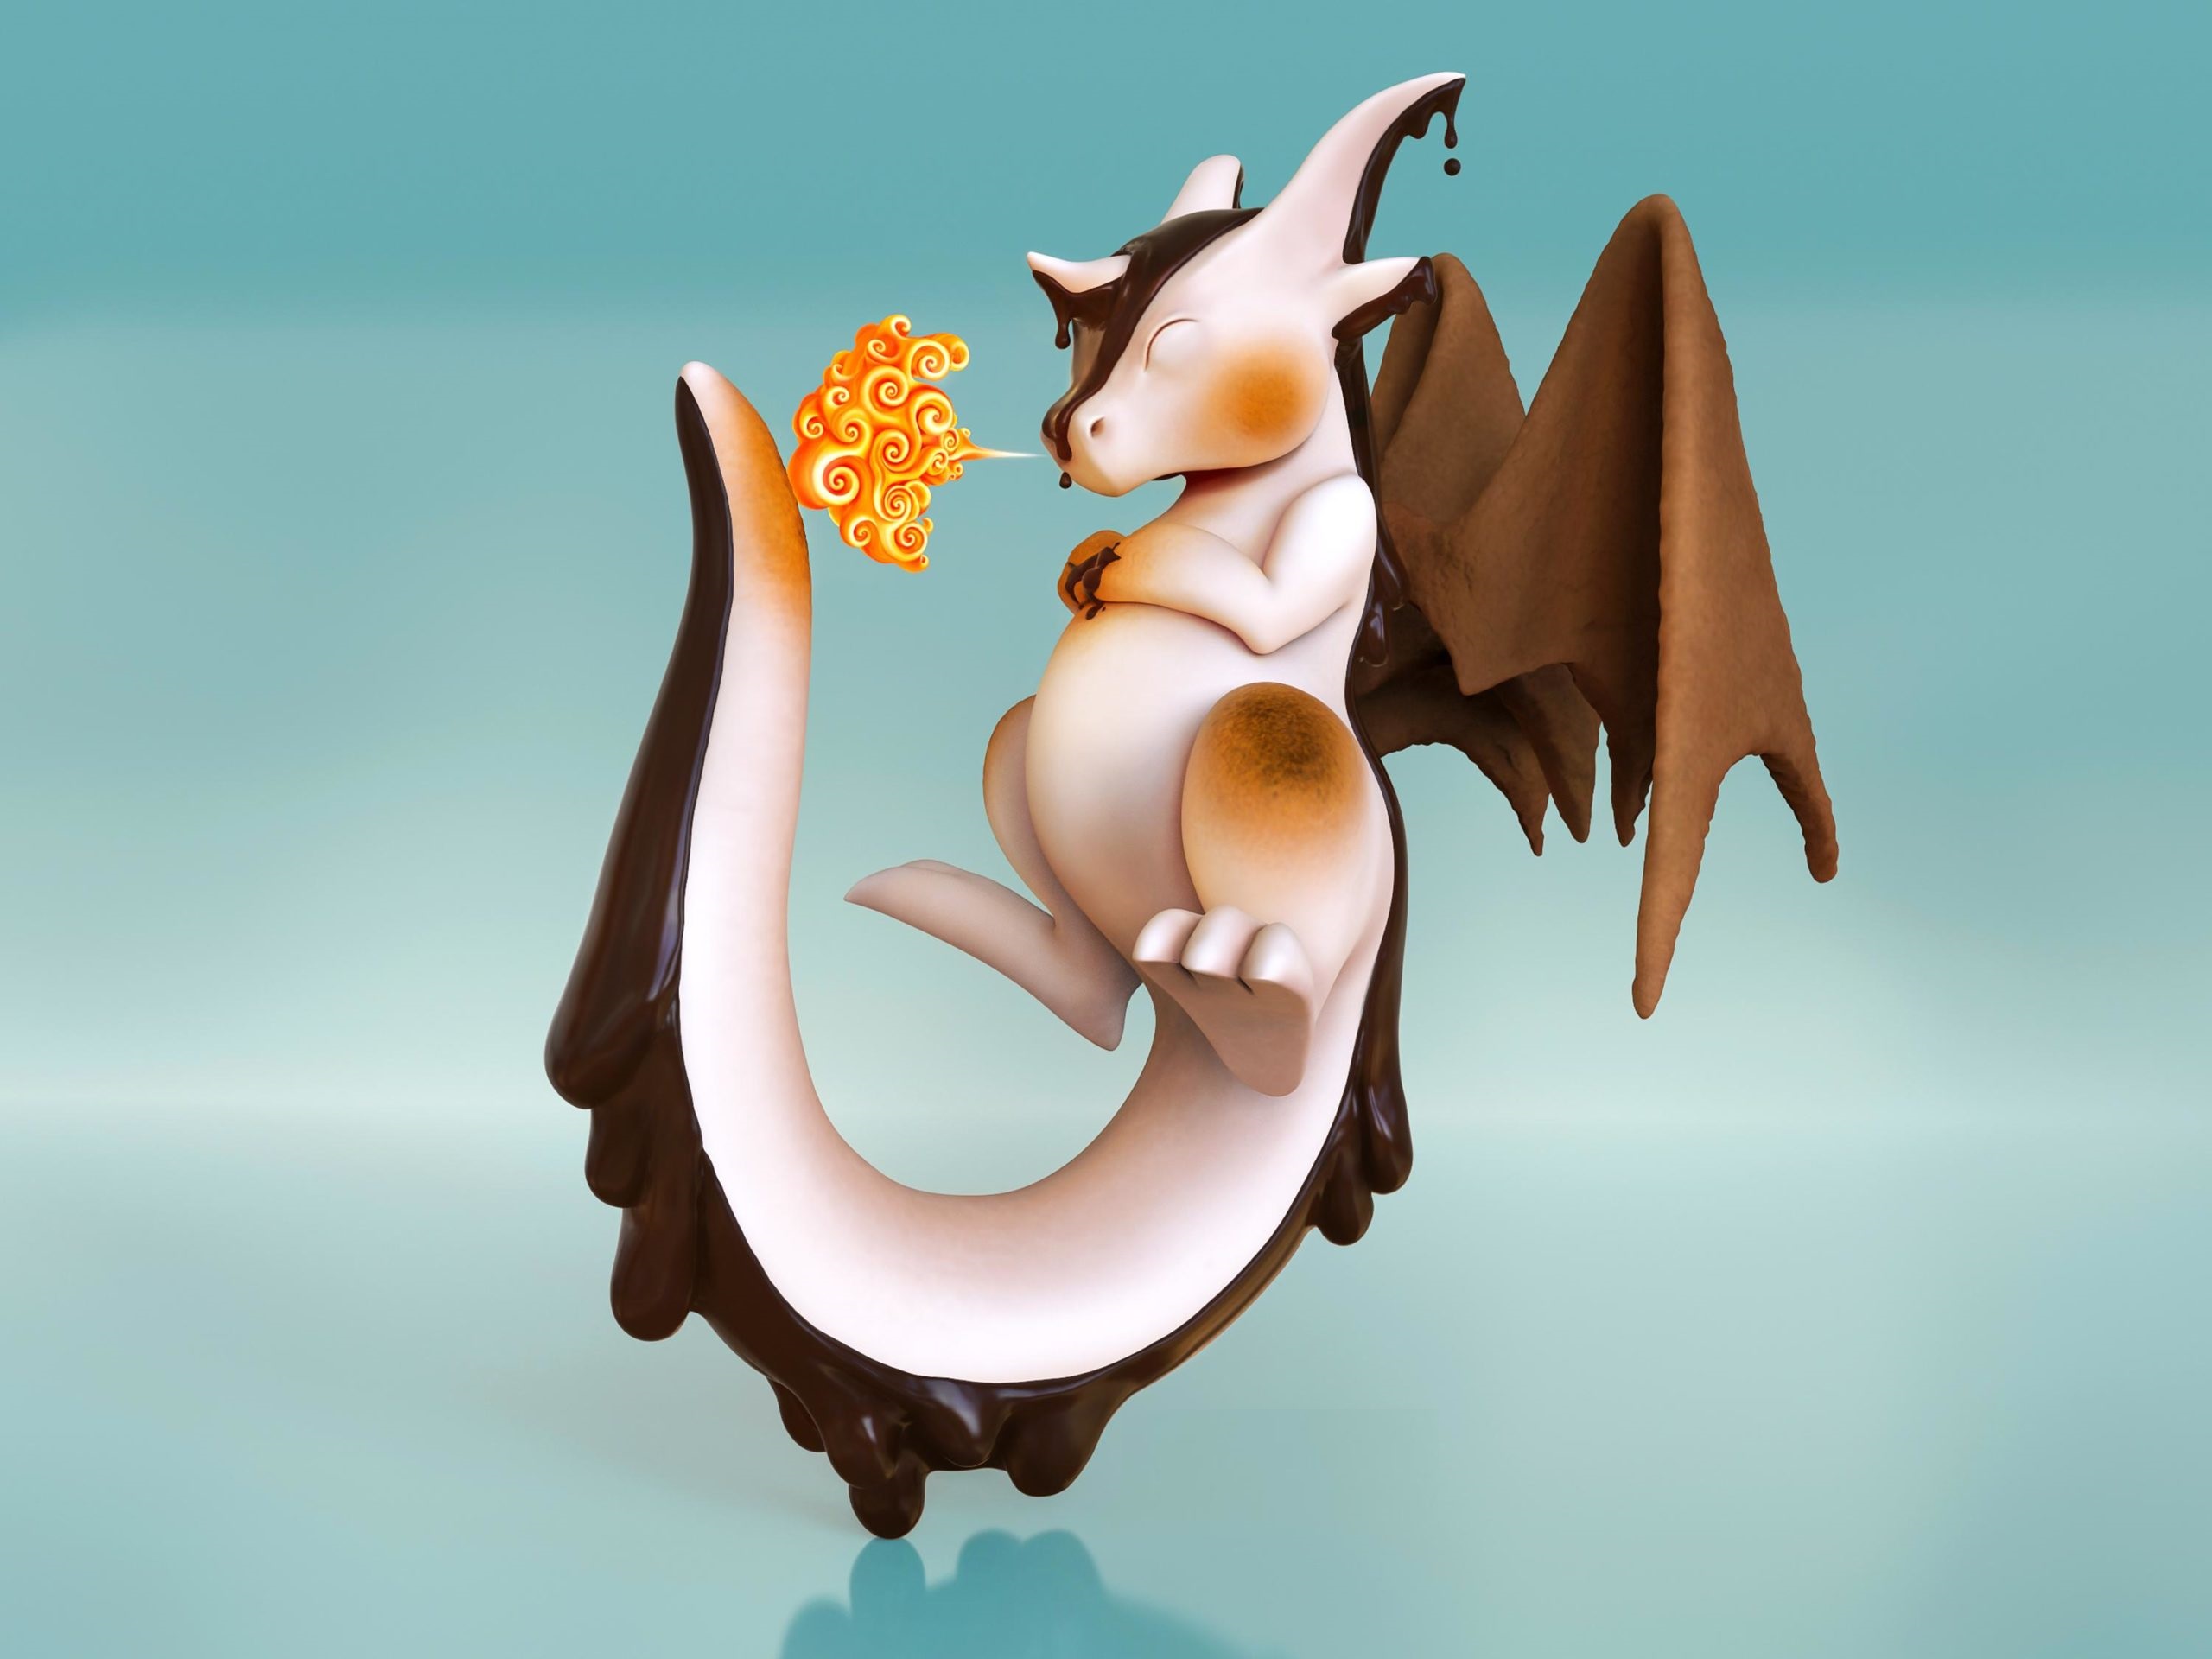 Ảnh Rồng Con Cute Chibi 3D Đẹp, Ngầu, Ấn Tượng Nhất